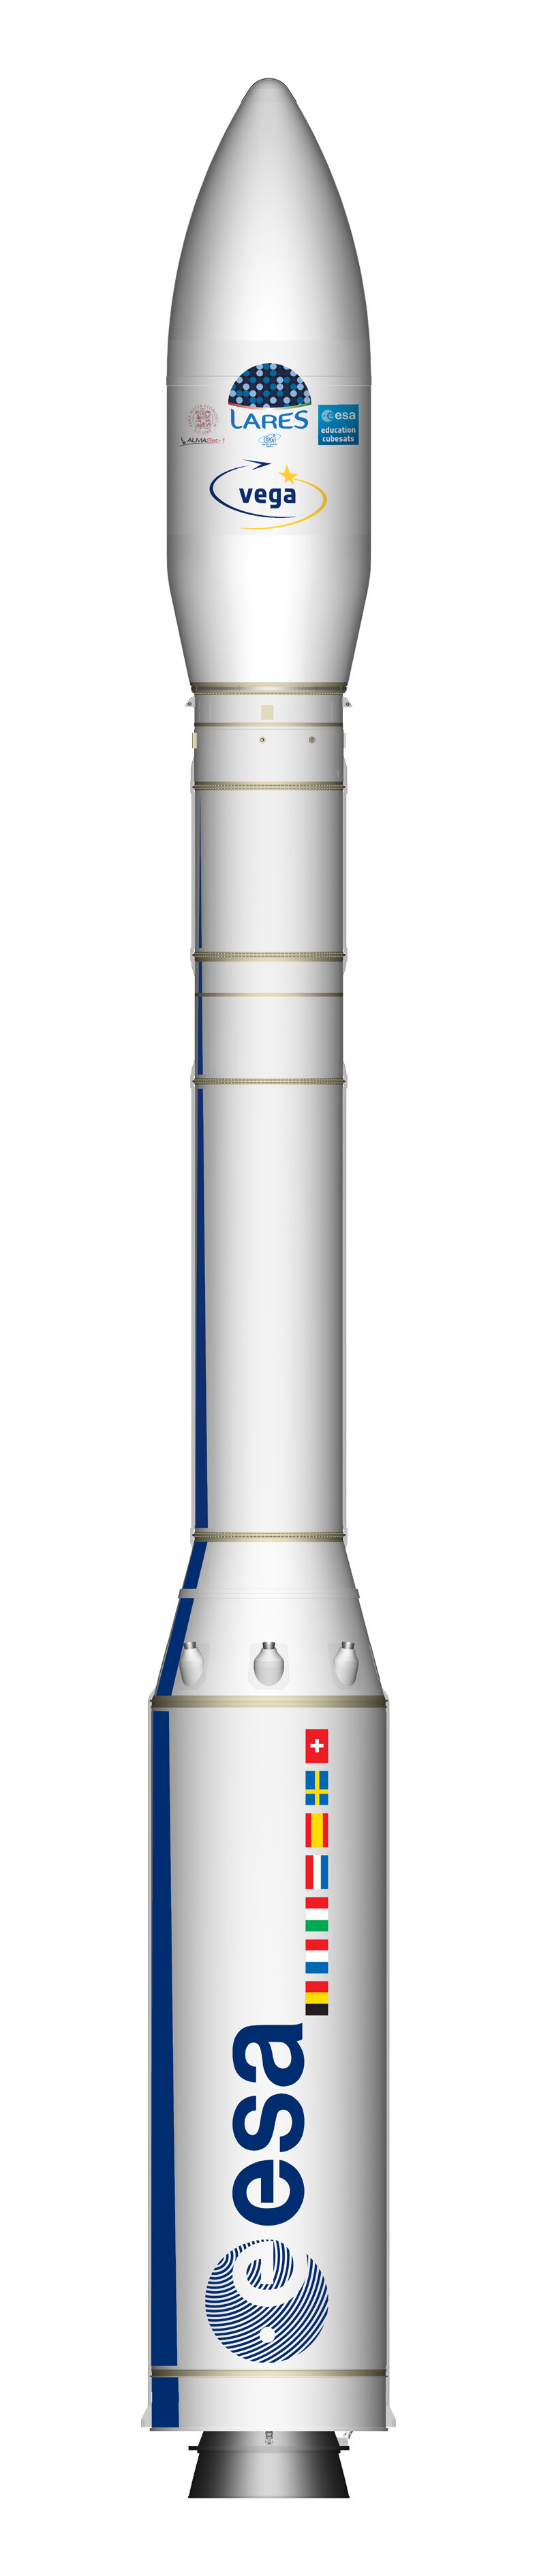 Raketa Vega v konfiguraci VV01.